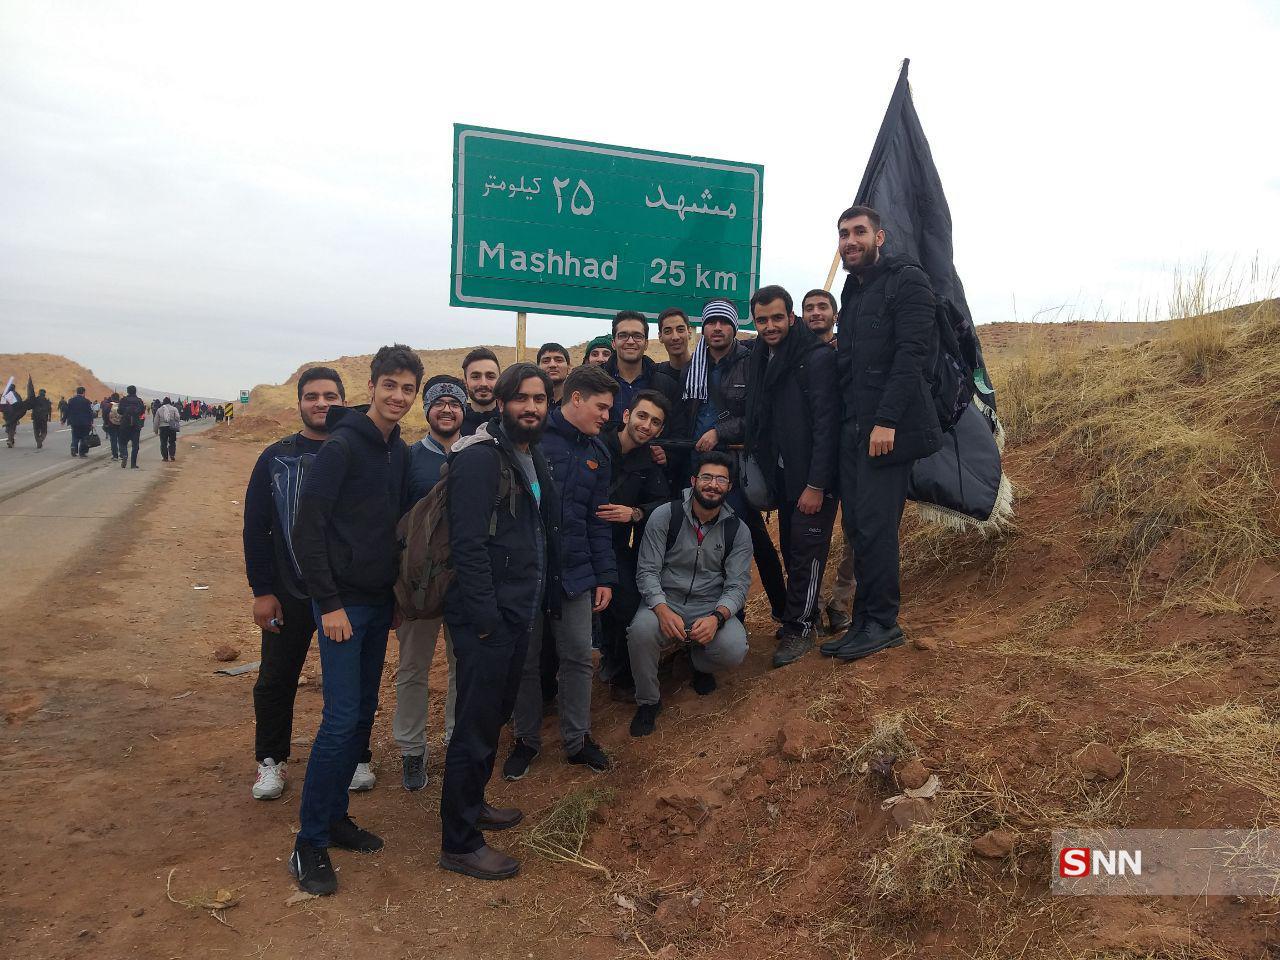 ۸۸ نفر از دانشجویان دانشگاه سمنان به ششمین اردوی پیاده روی طریق رضوی اعزام شدند